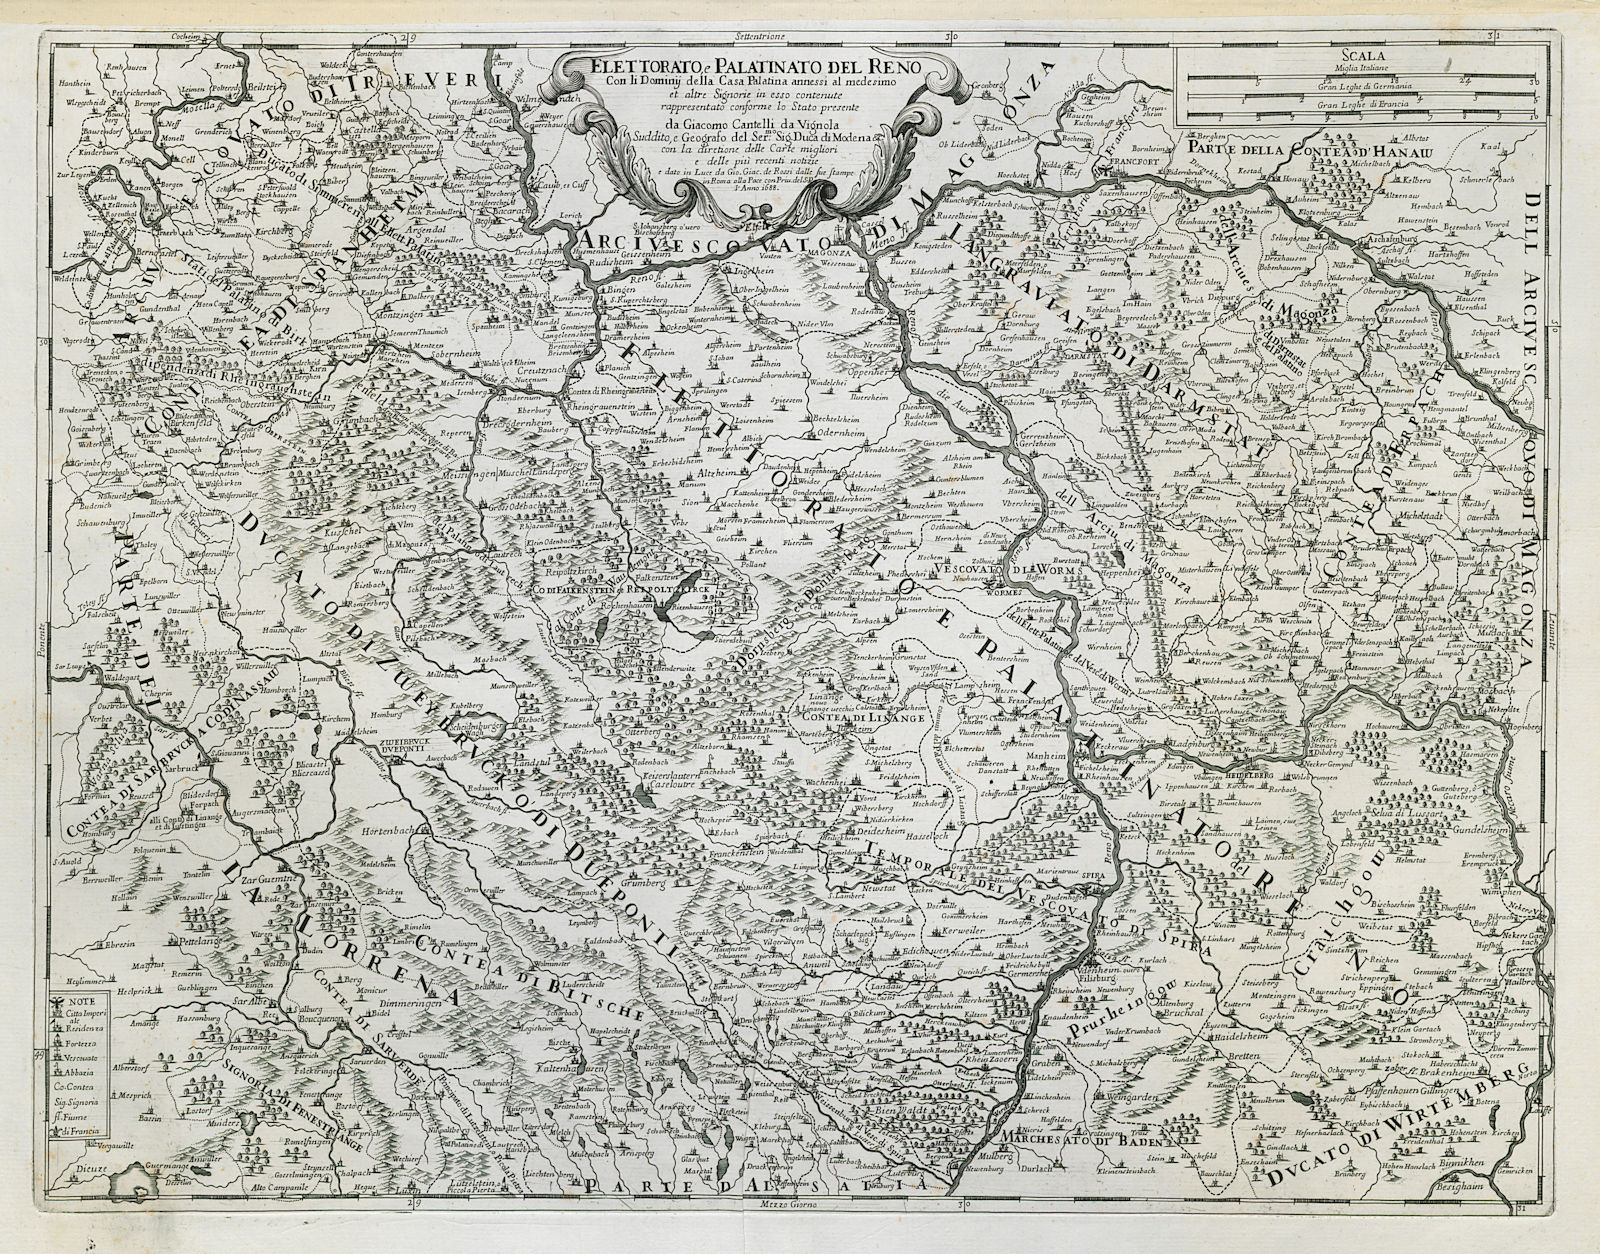 Elettorato e Palatinato del Reno. Rheinland-Pfalz south. ROSSI/CANTELLI 1688 map